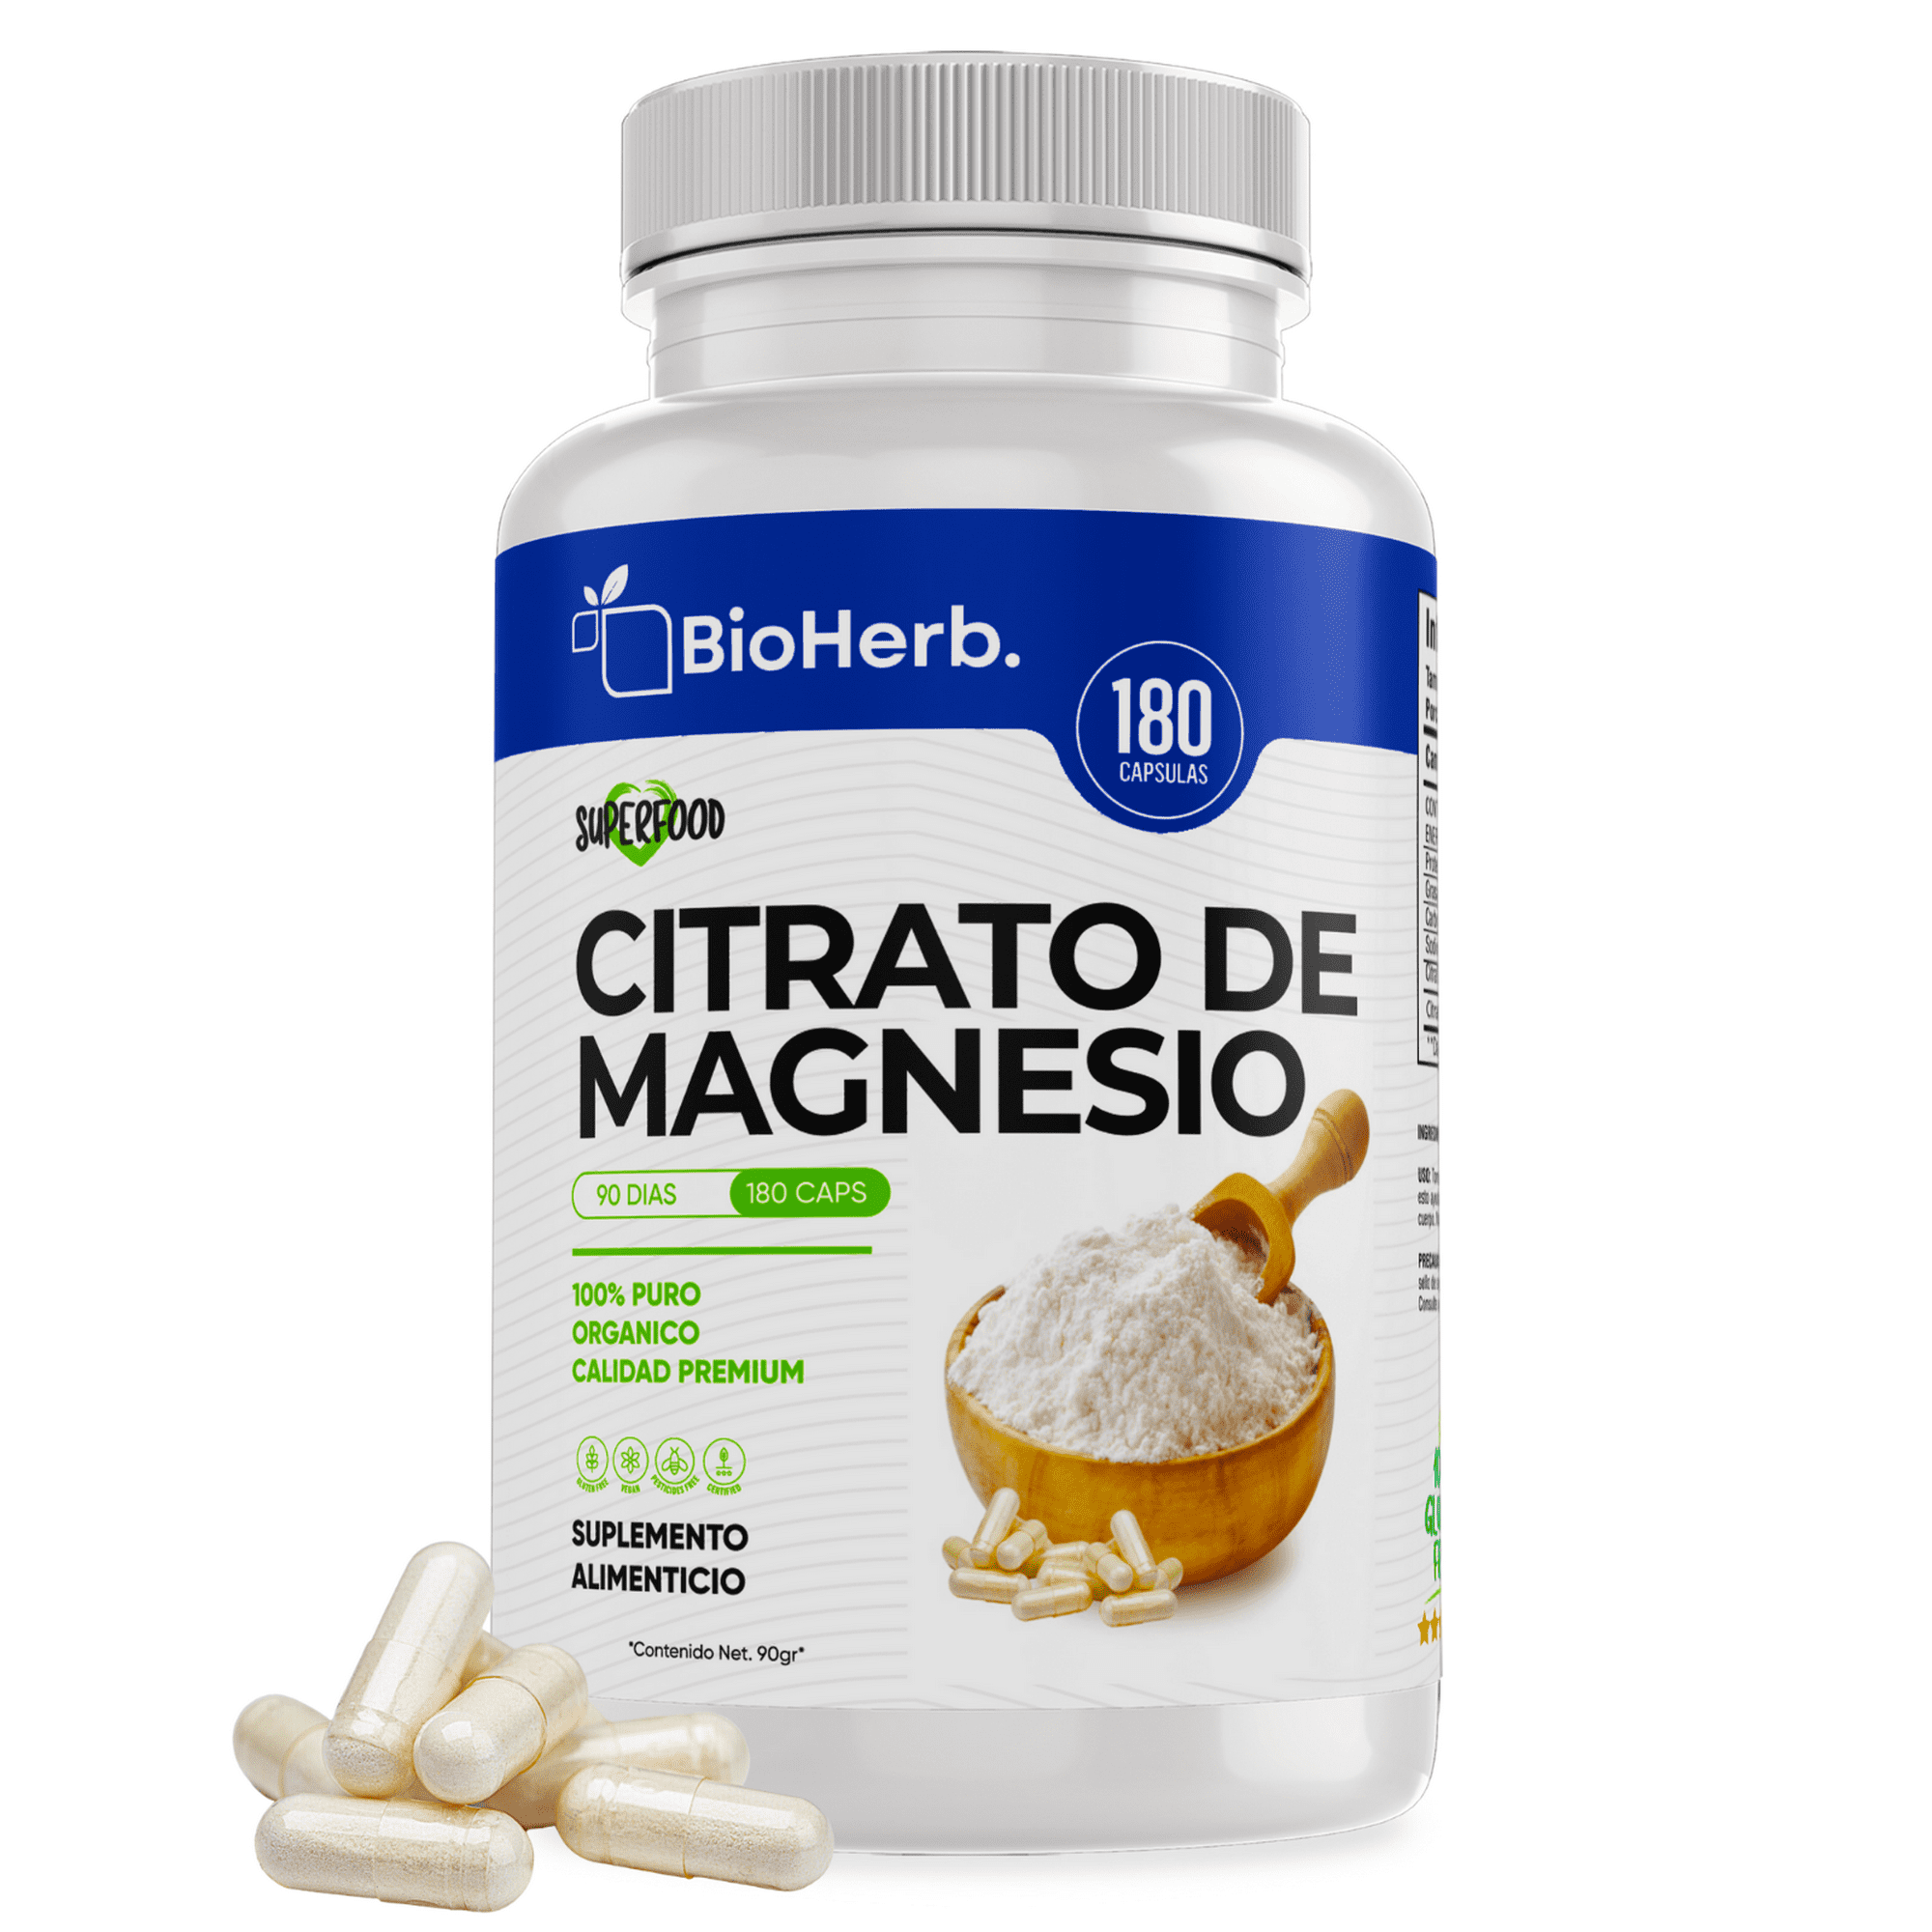 Citrato de magnesio + citrato de potasio (180 capsulas de 500mg) | ingredientes 100% puros | para 90 dias | - citrato blends - bioherb.